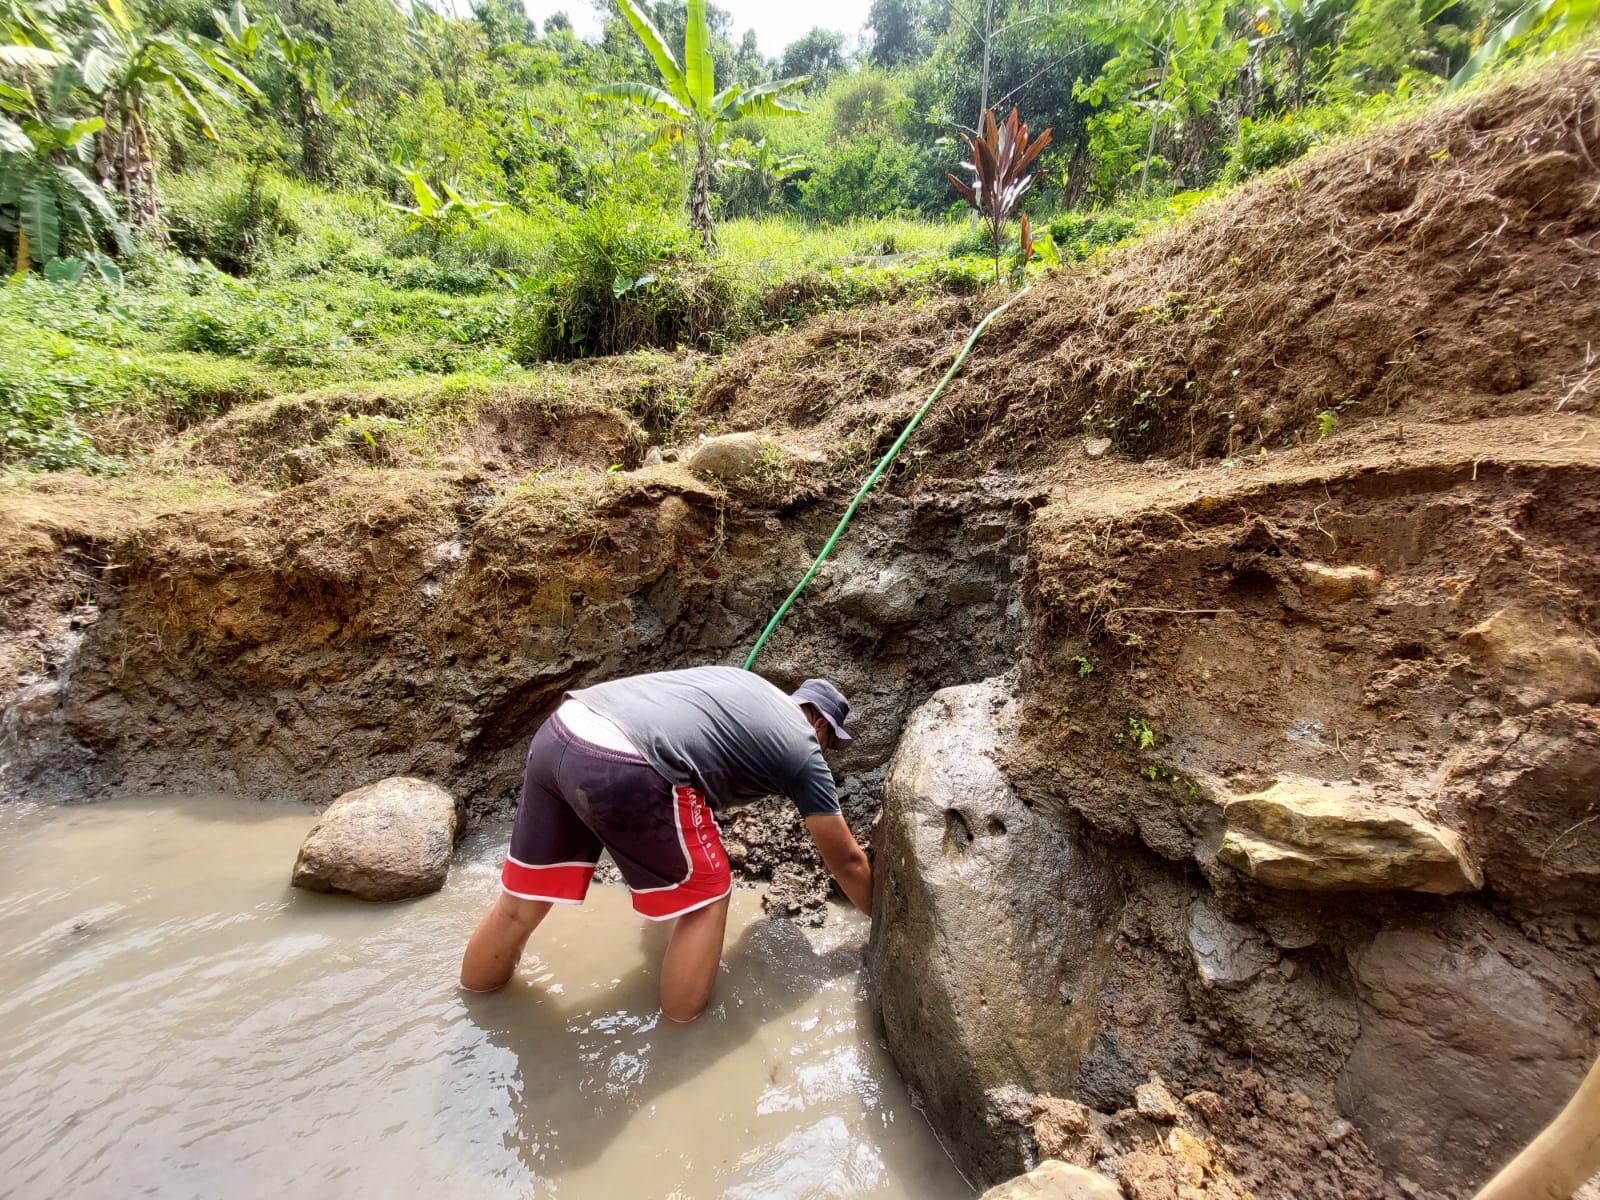 Warga membersihkan sumber air panas di Desa Cimanggu, Ngamprah, yang akan dijadikan objek wisata